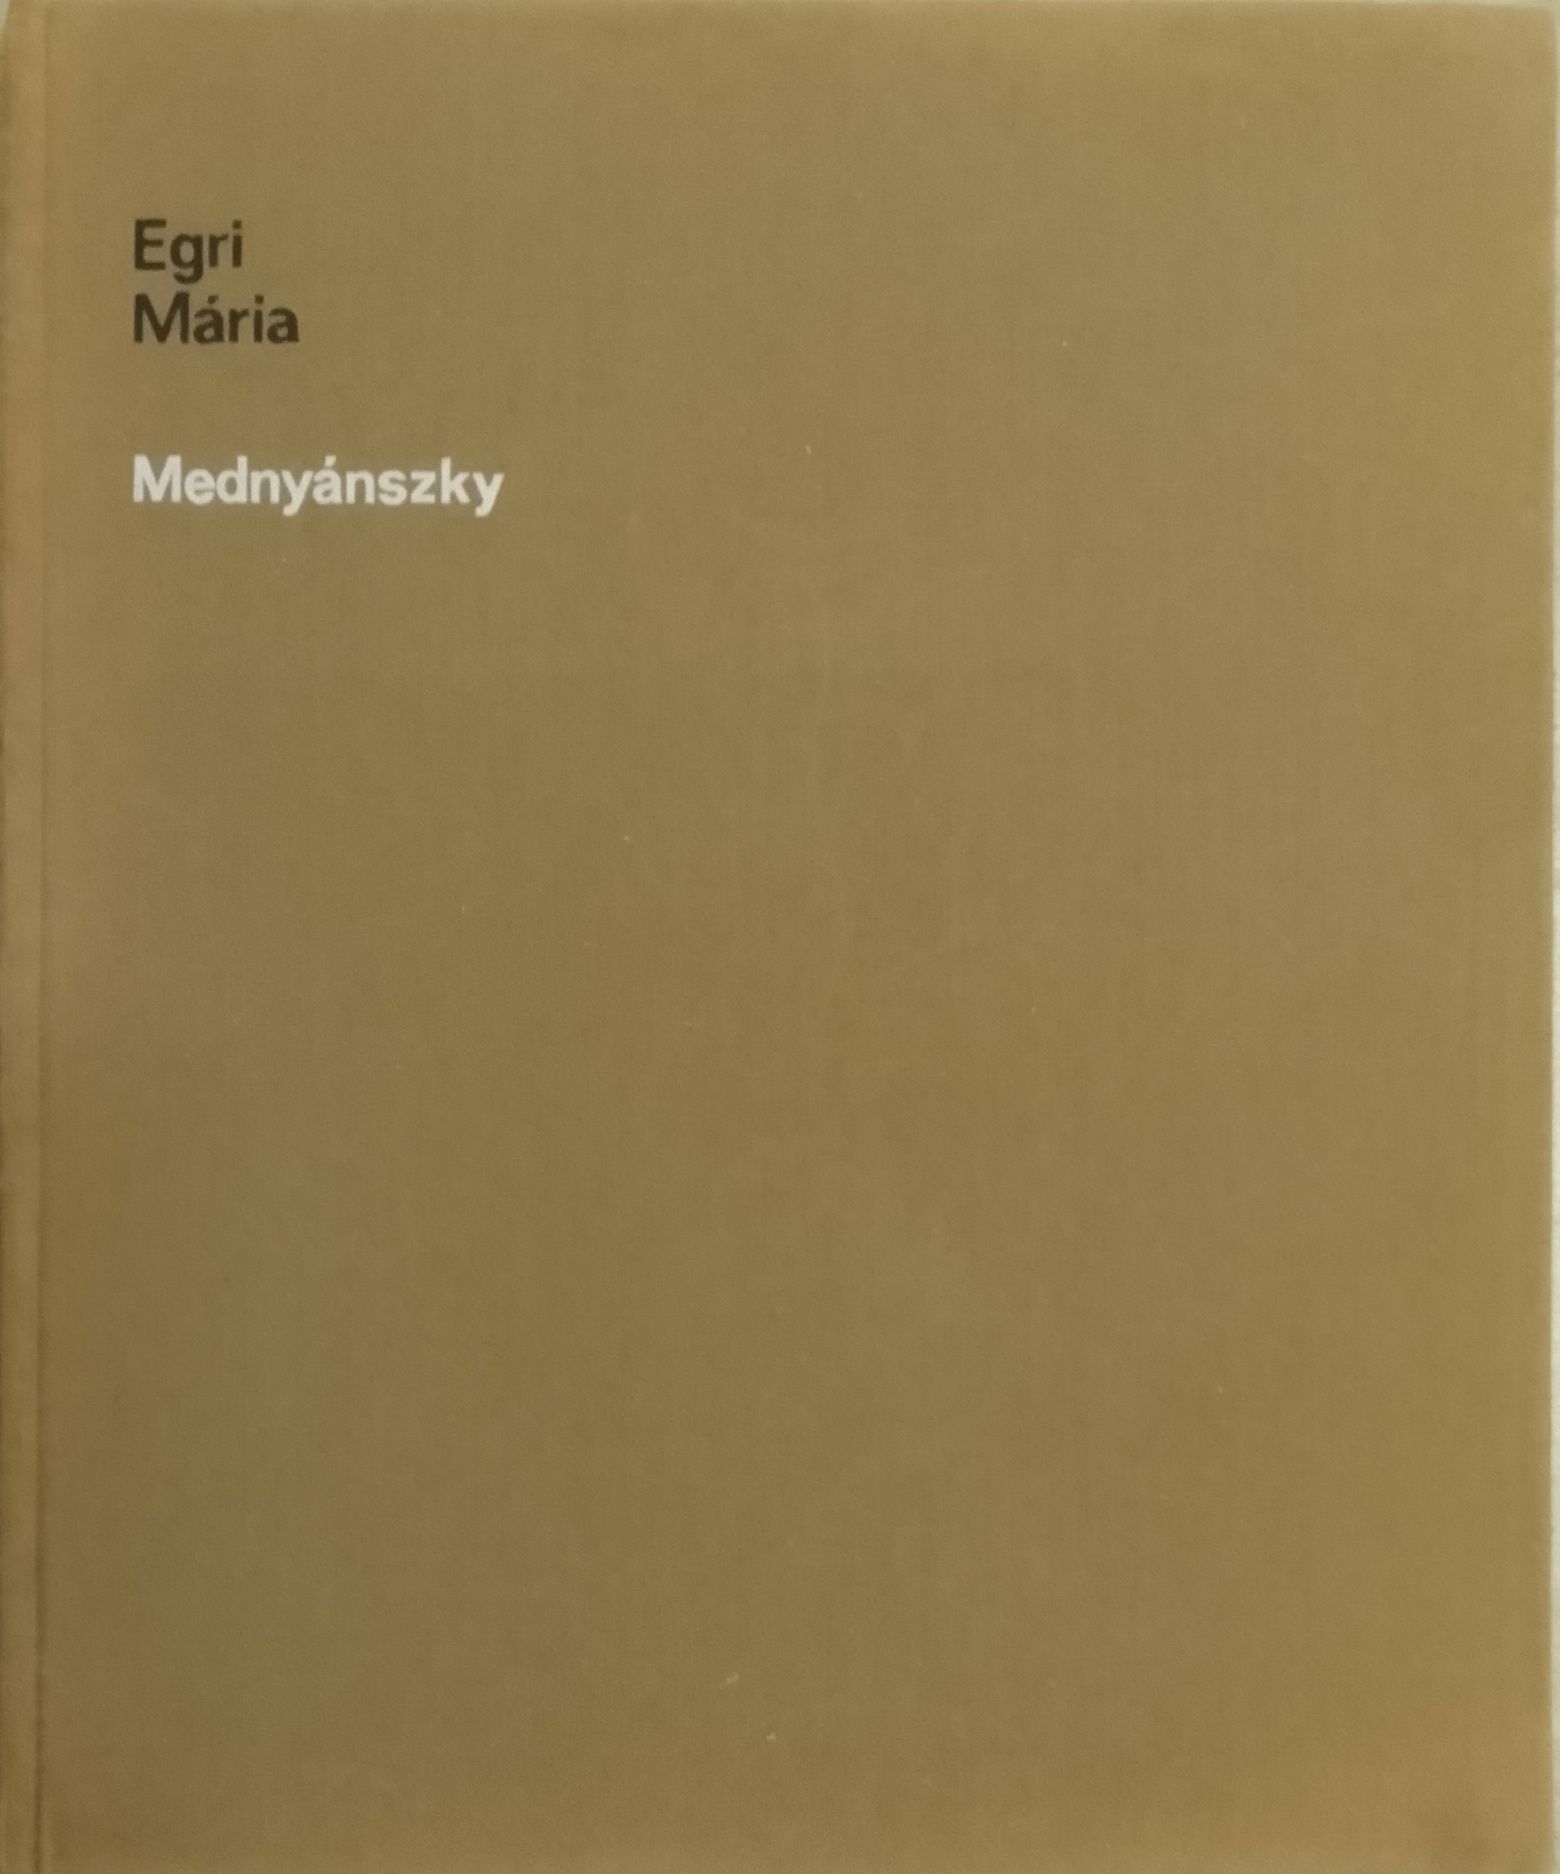 Mednyánszky, Egri Mária (антикварное издание)
Egri Mária